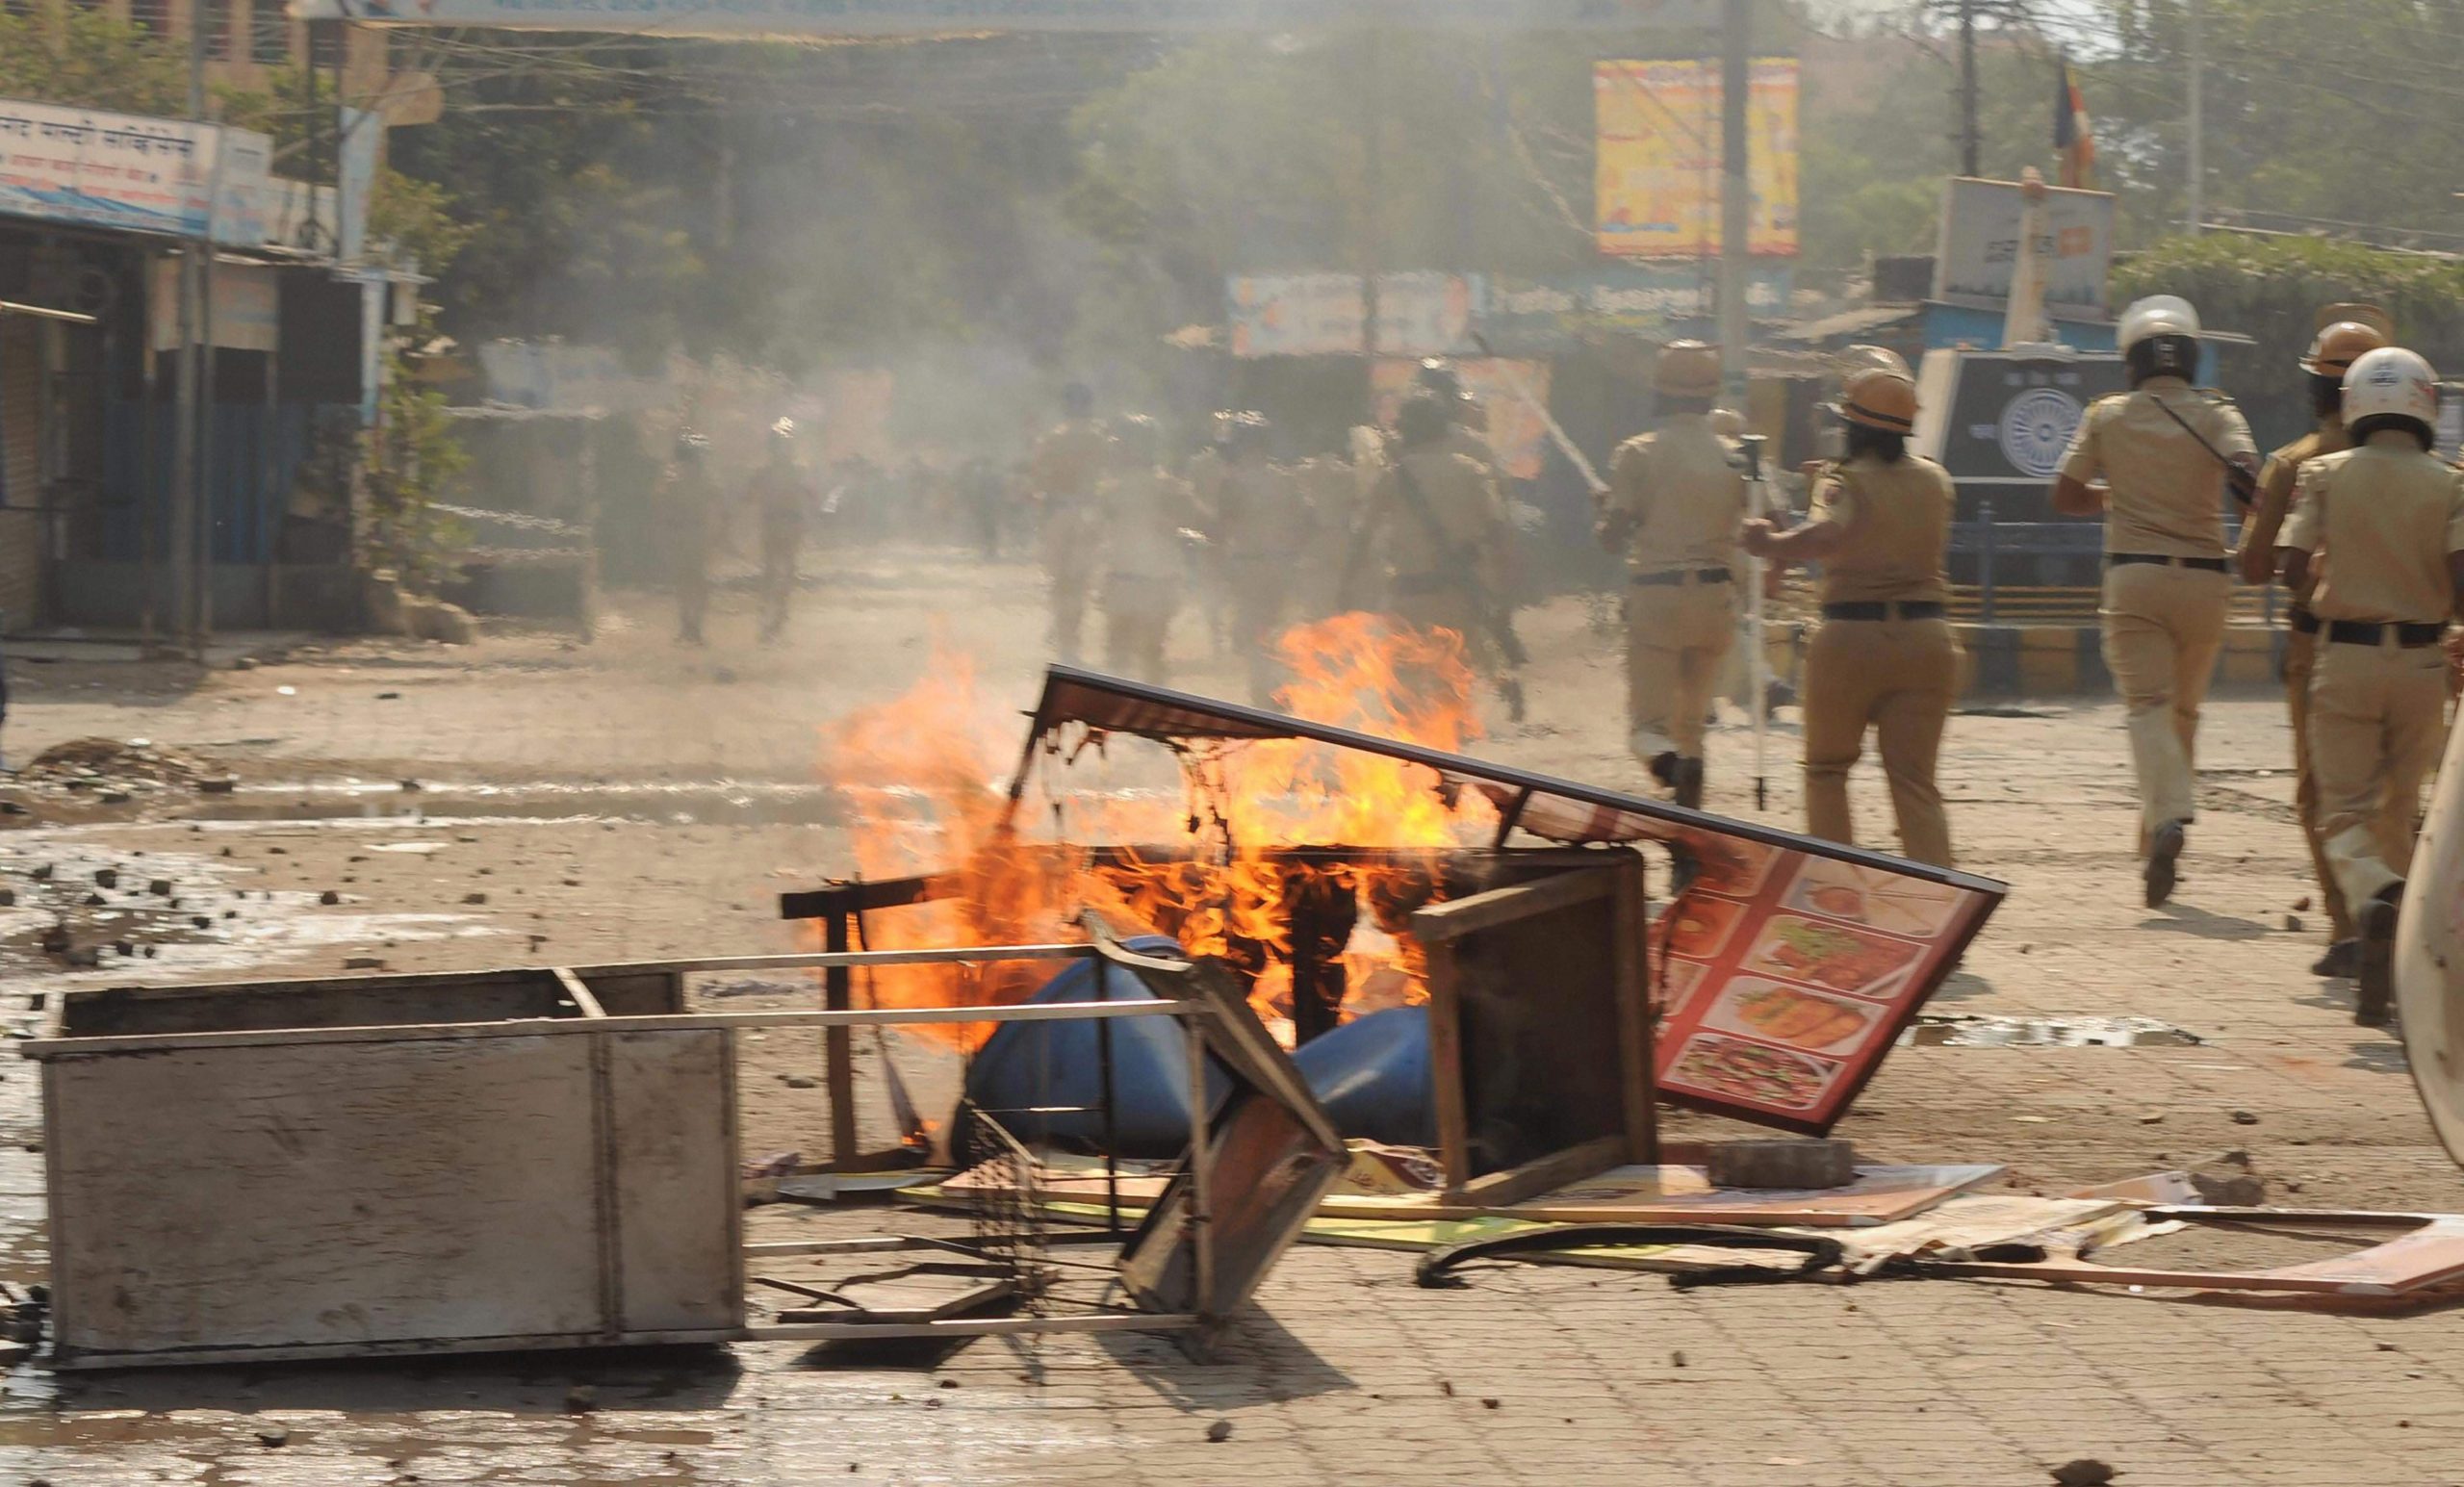 महाराष्ट्र: भीमा कोरेगांव हिंसा की जांच करने वाले आयोग को तीन महीने का विस्तार मिला